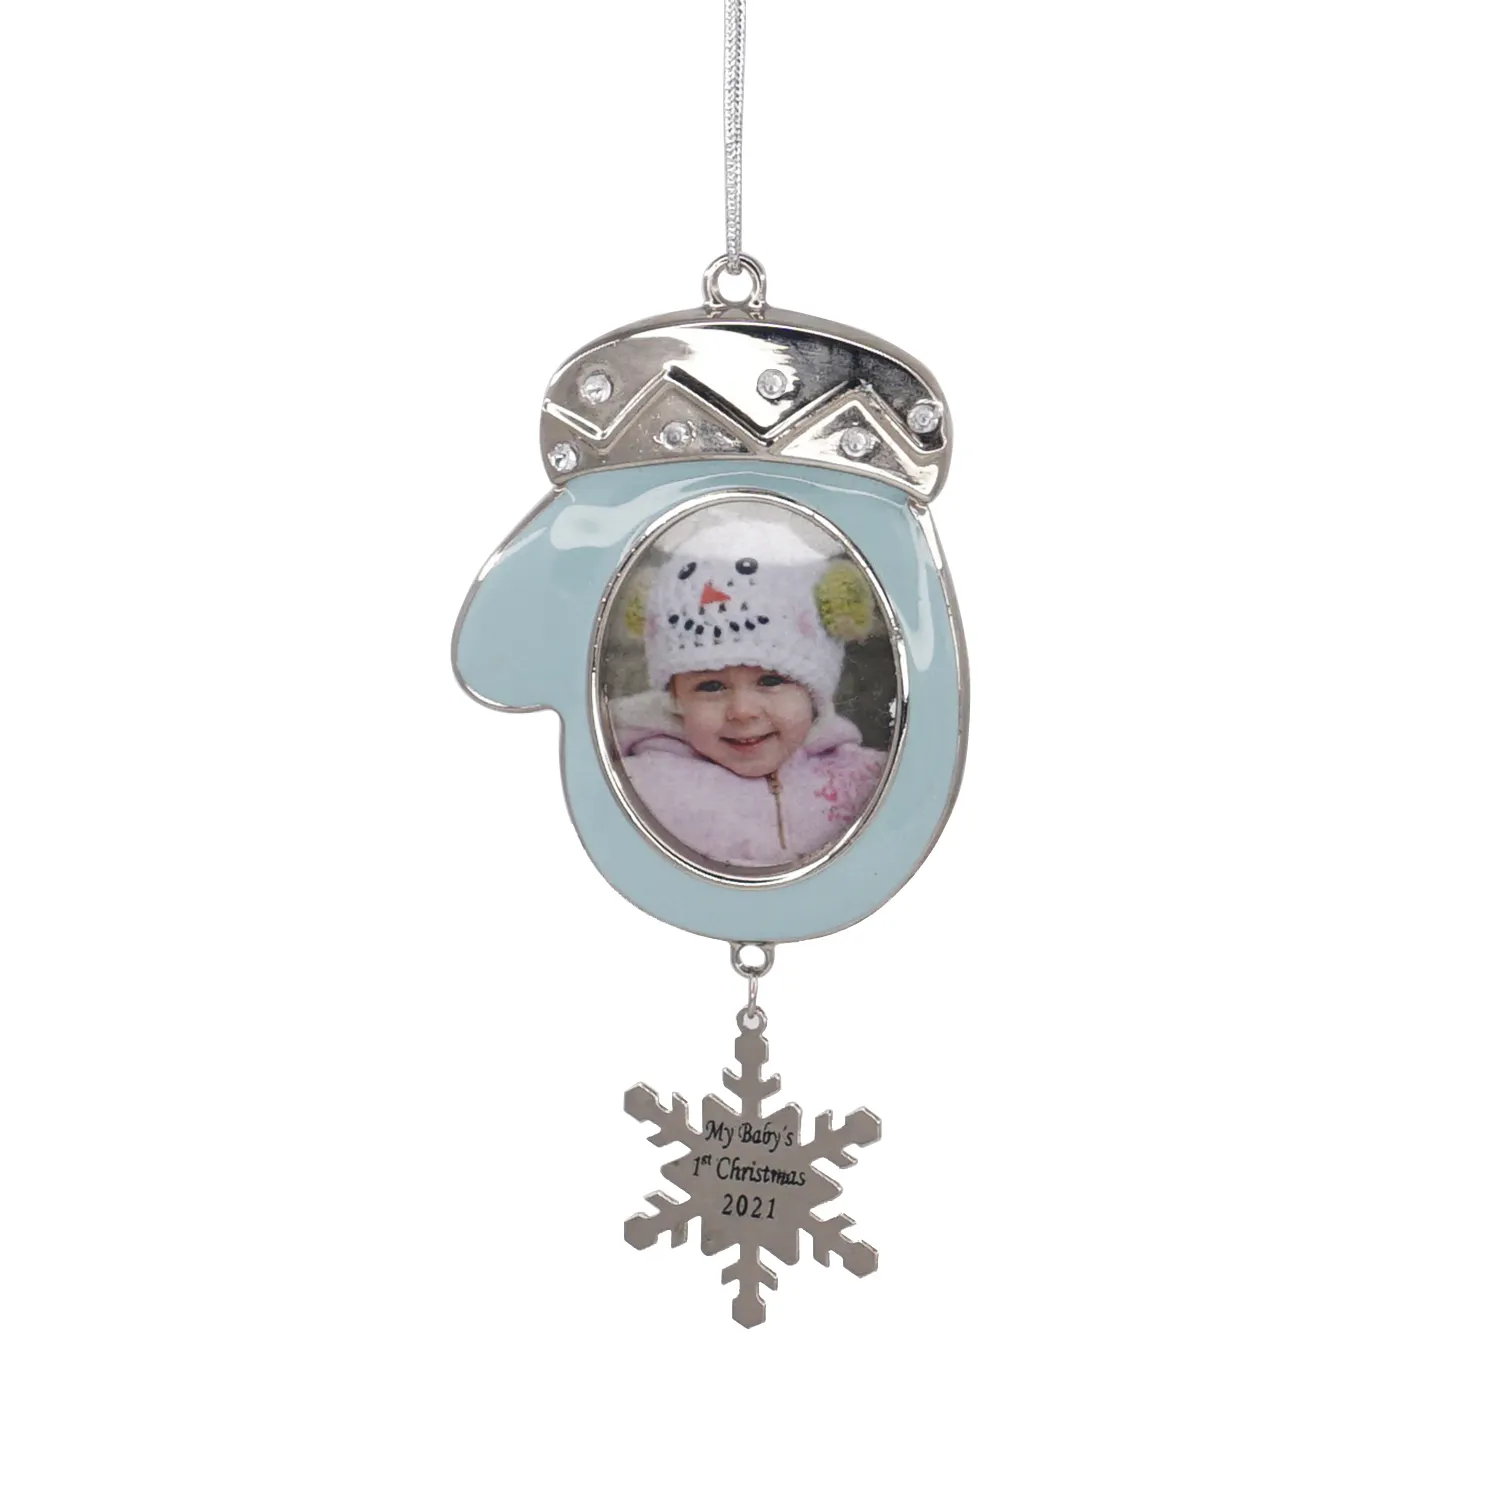 İlk yıl bebek hediye ev aile dekor süsler Metal fotoğraf çerçevesi süsler bebek hediye için noel ağacı süsleme